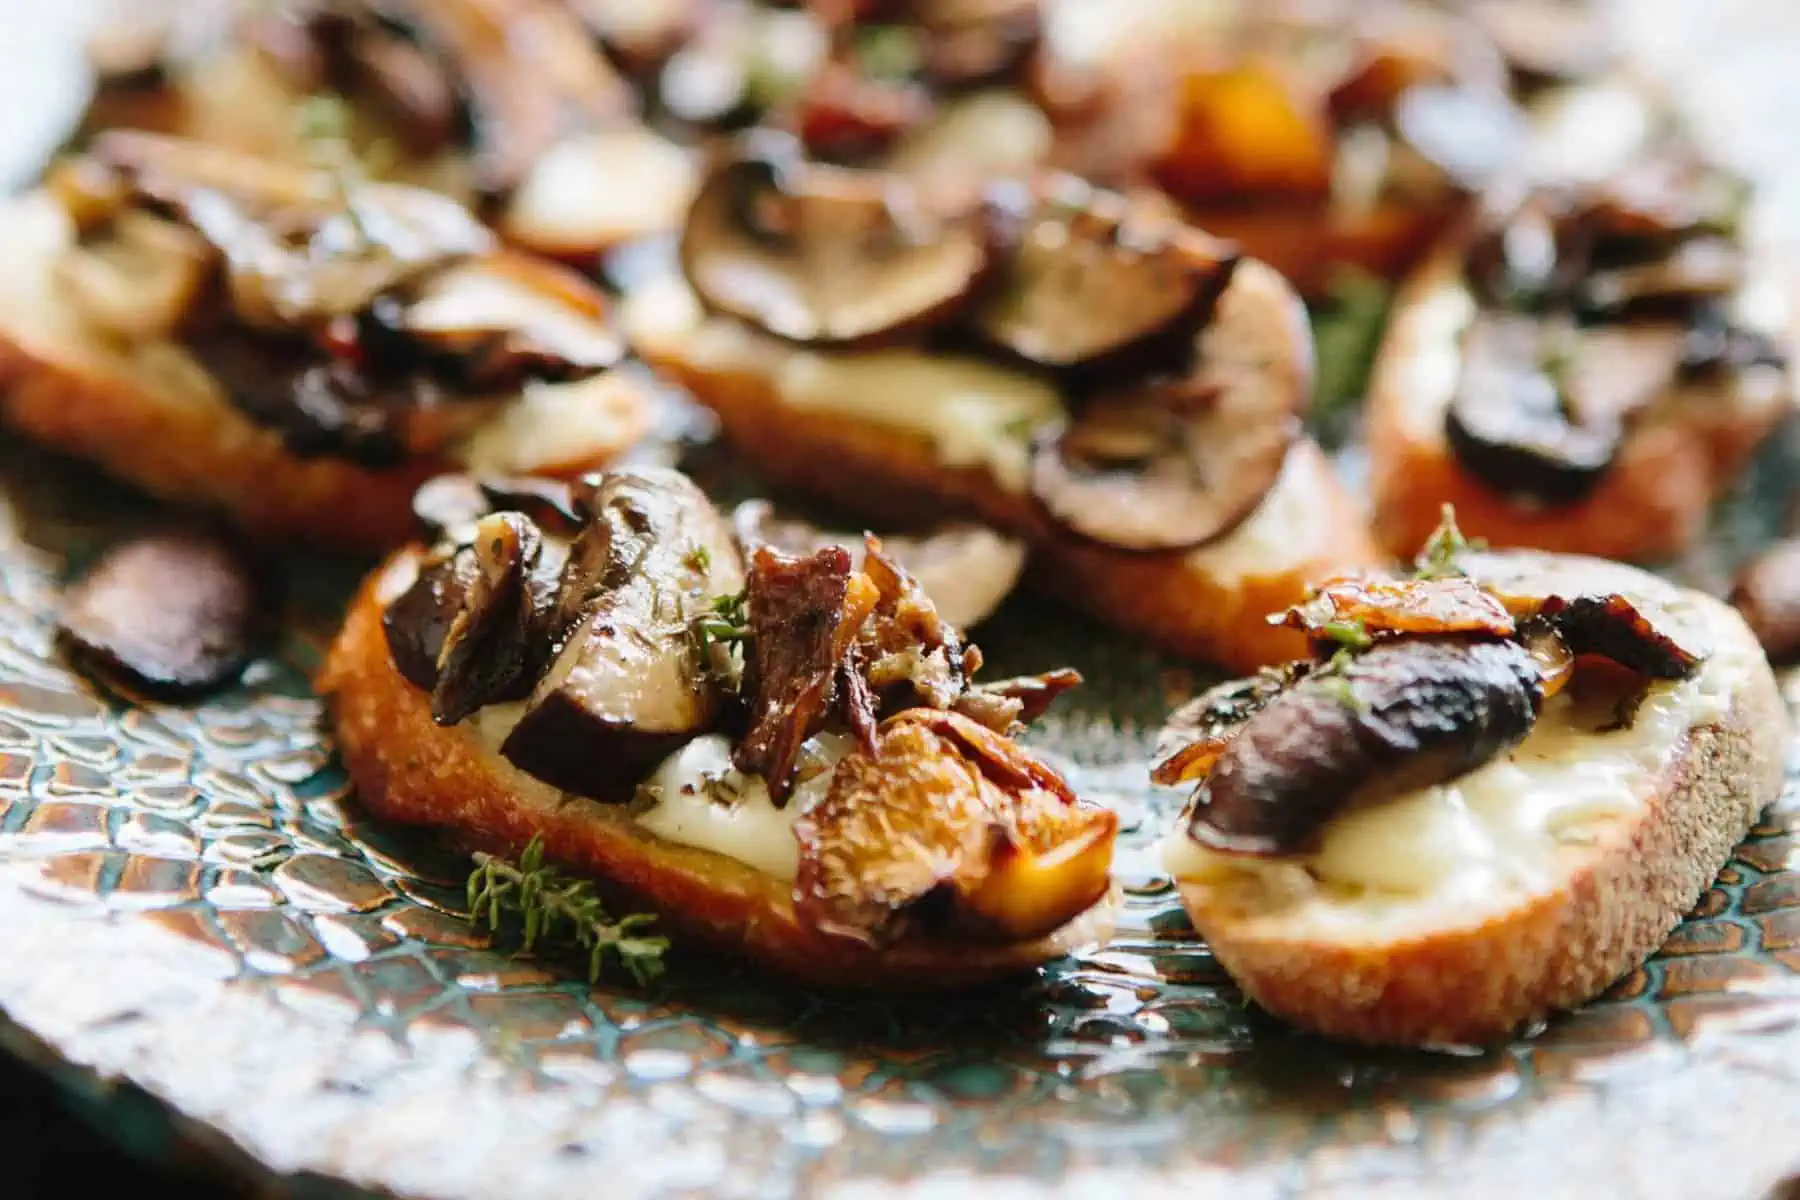 Close up of roasted mushrooms on crostini.